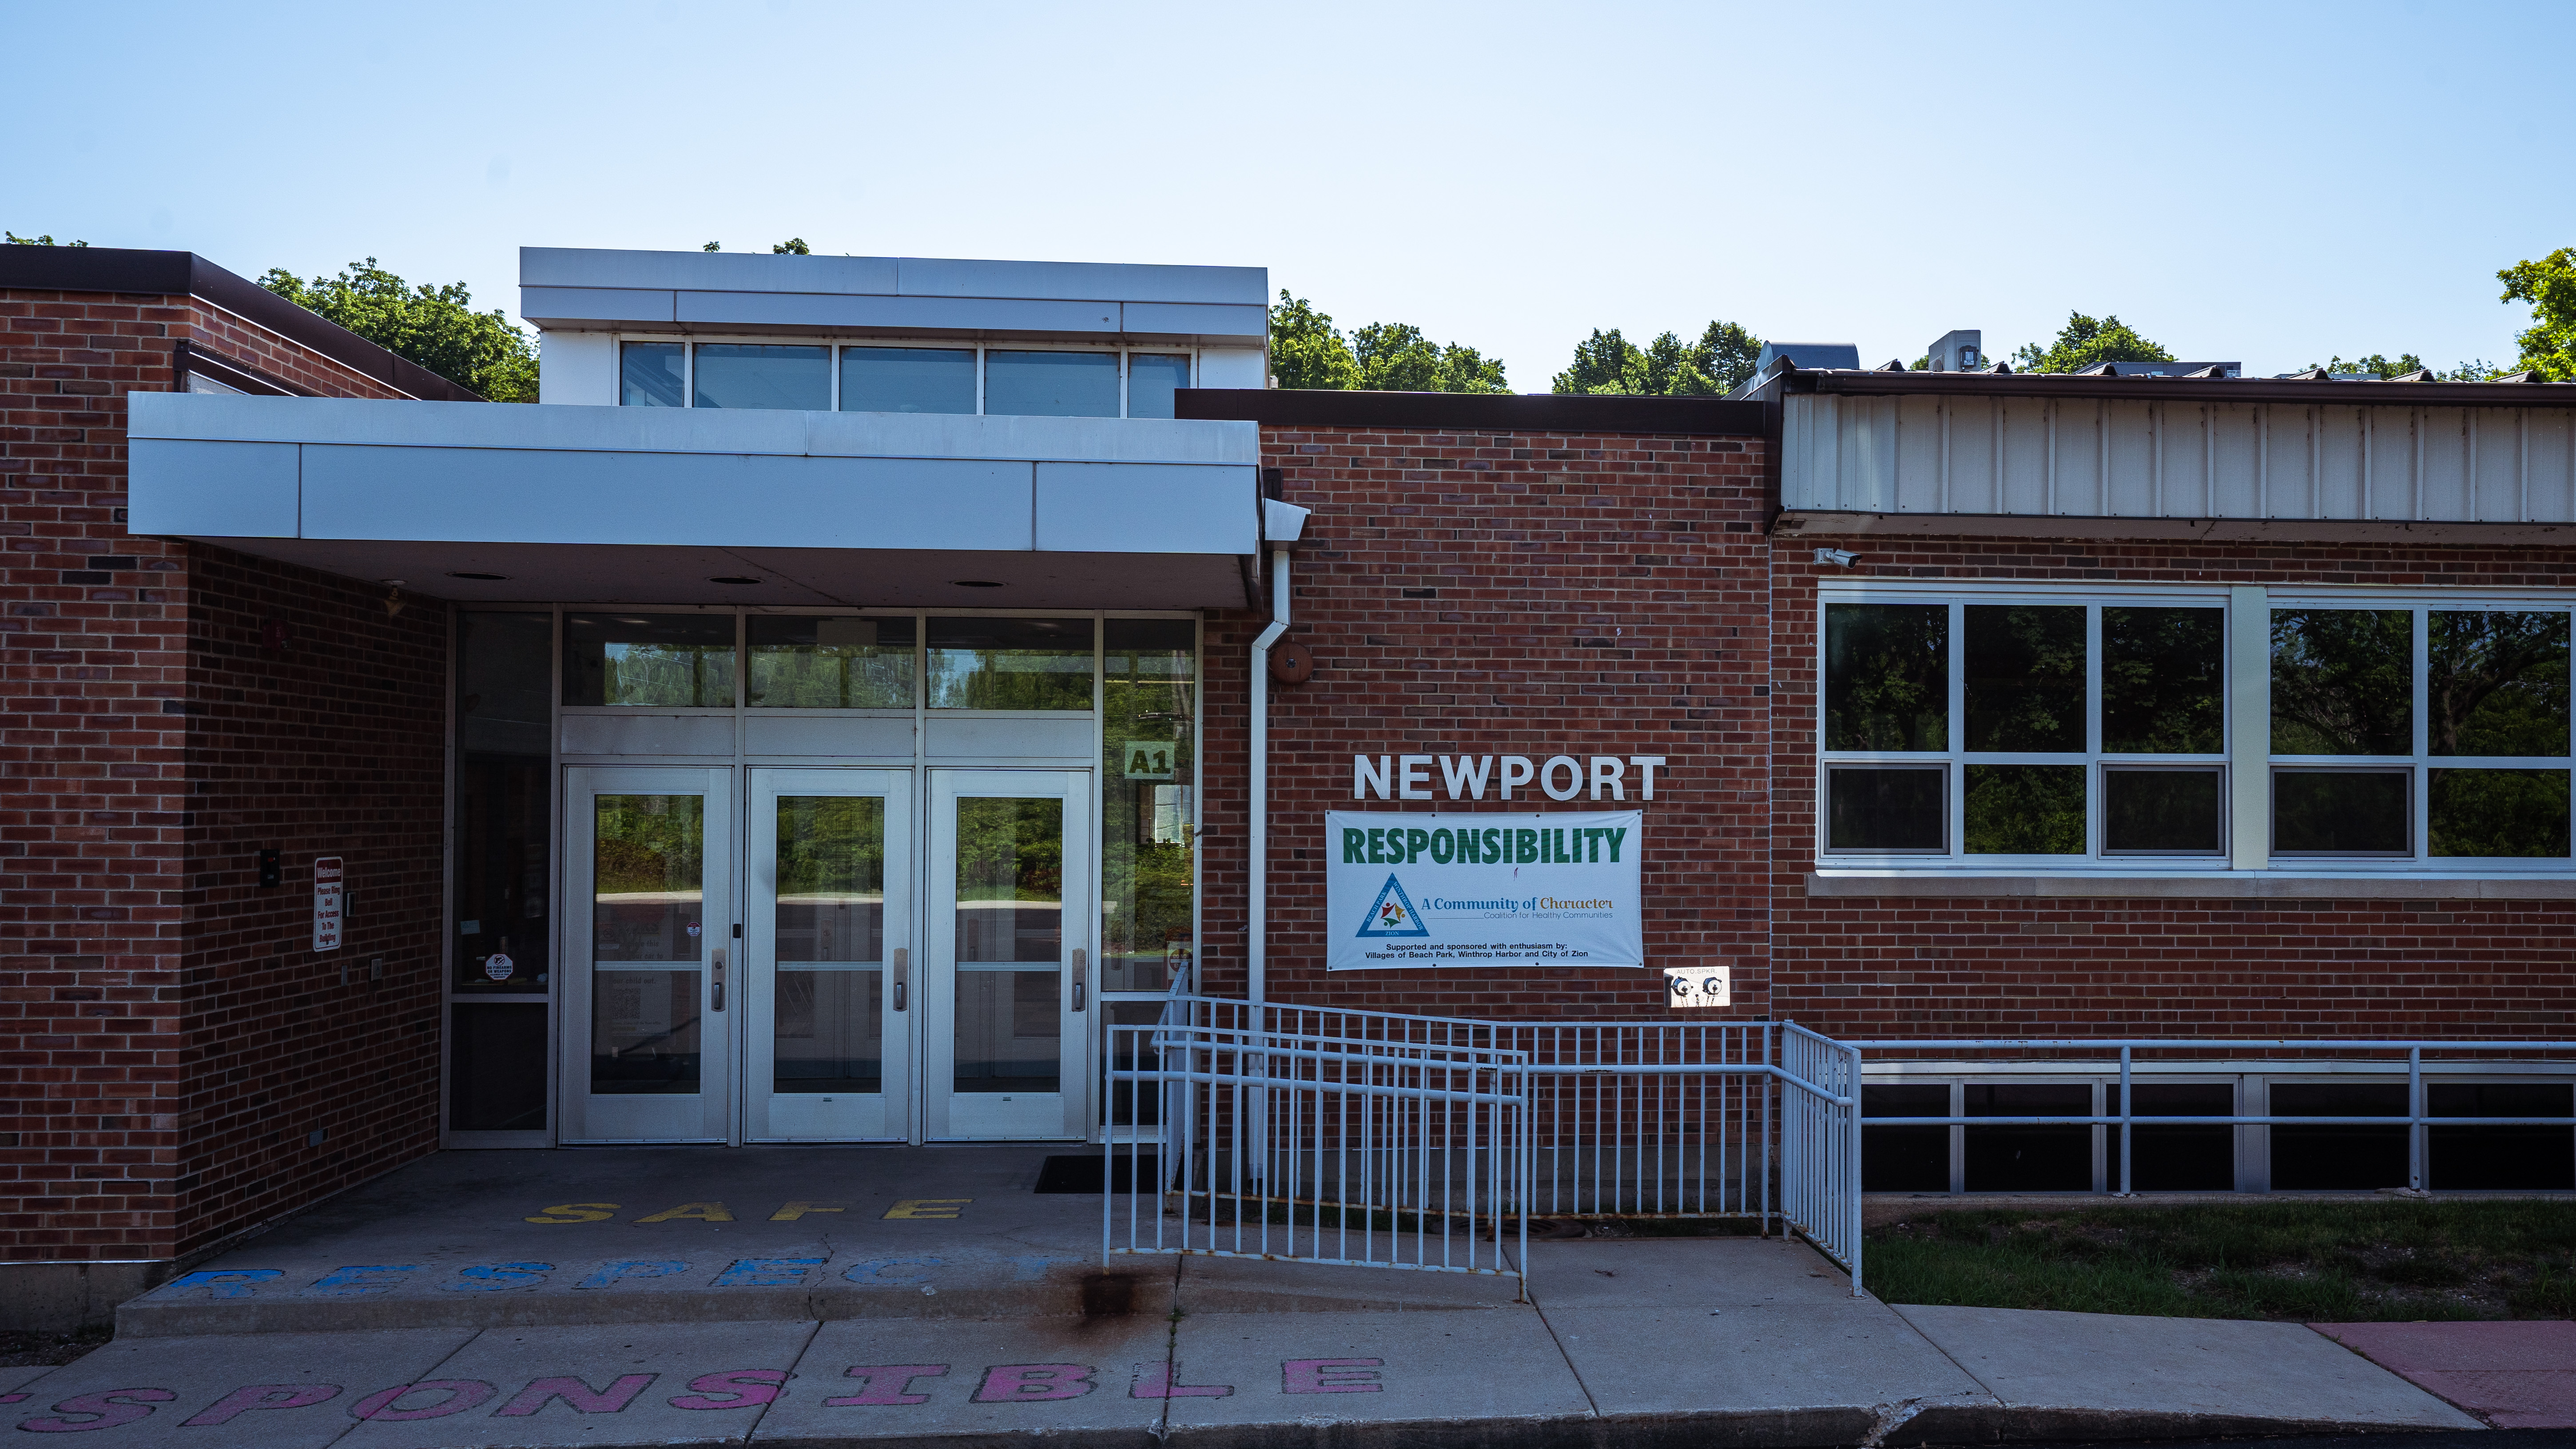 Newport Elementary School